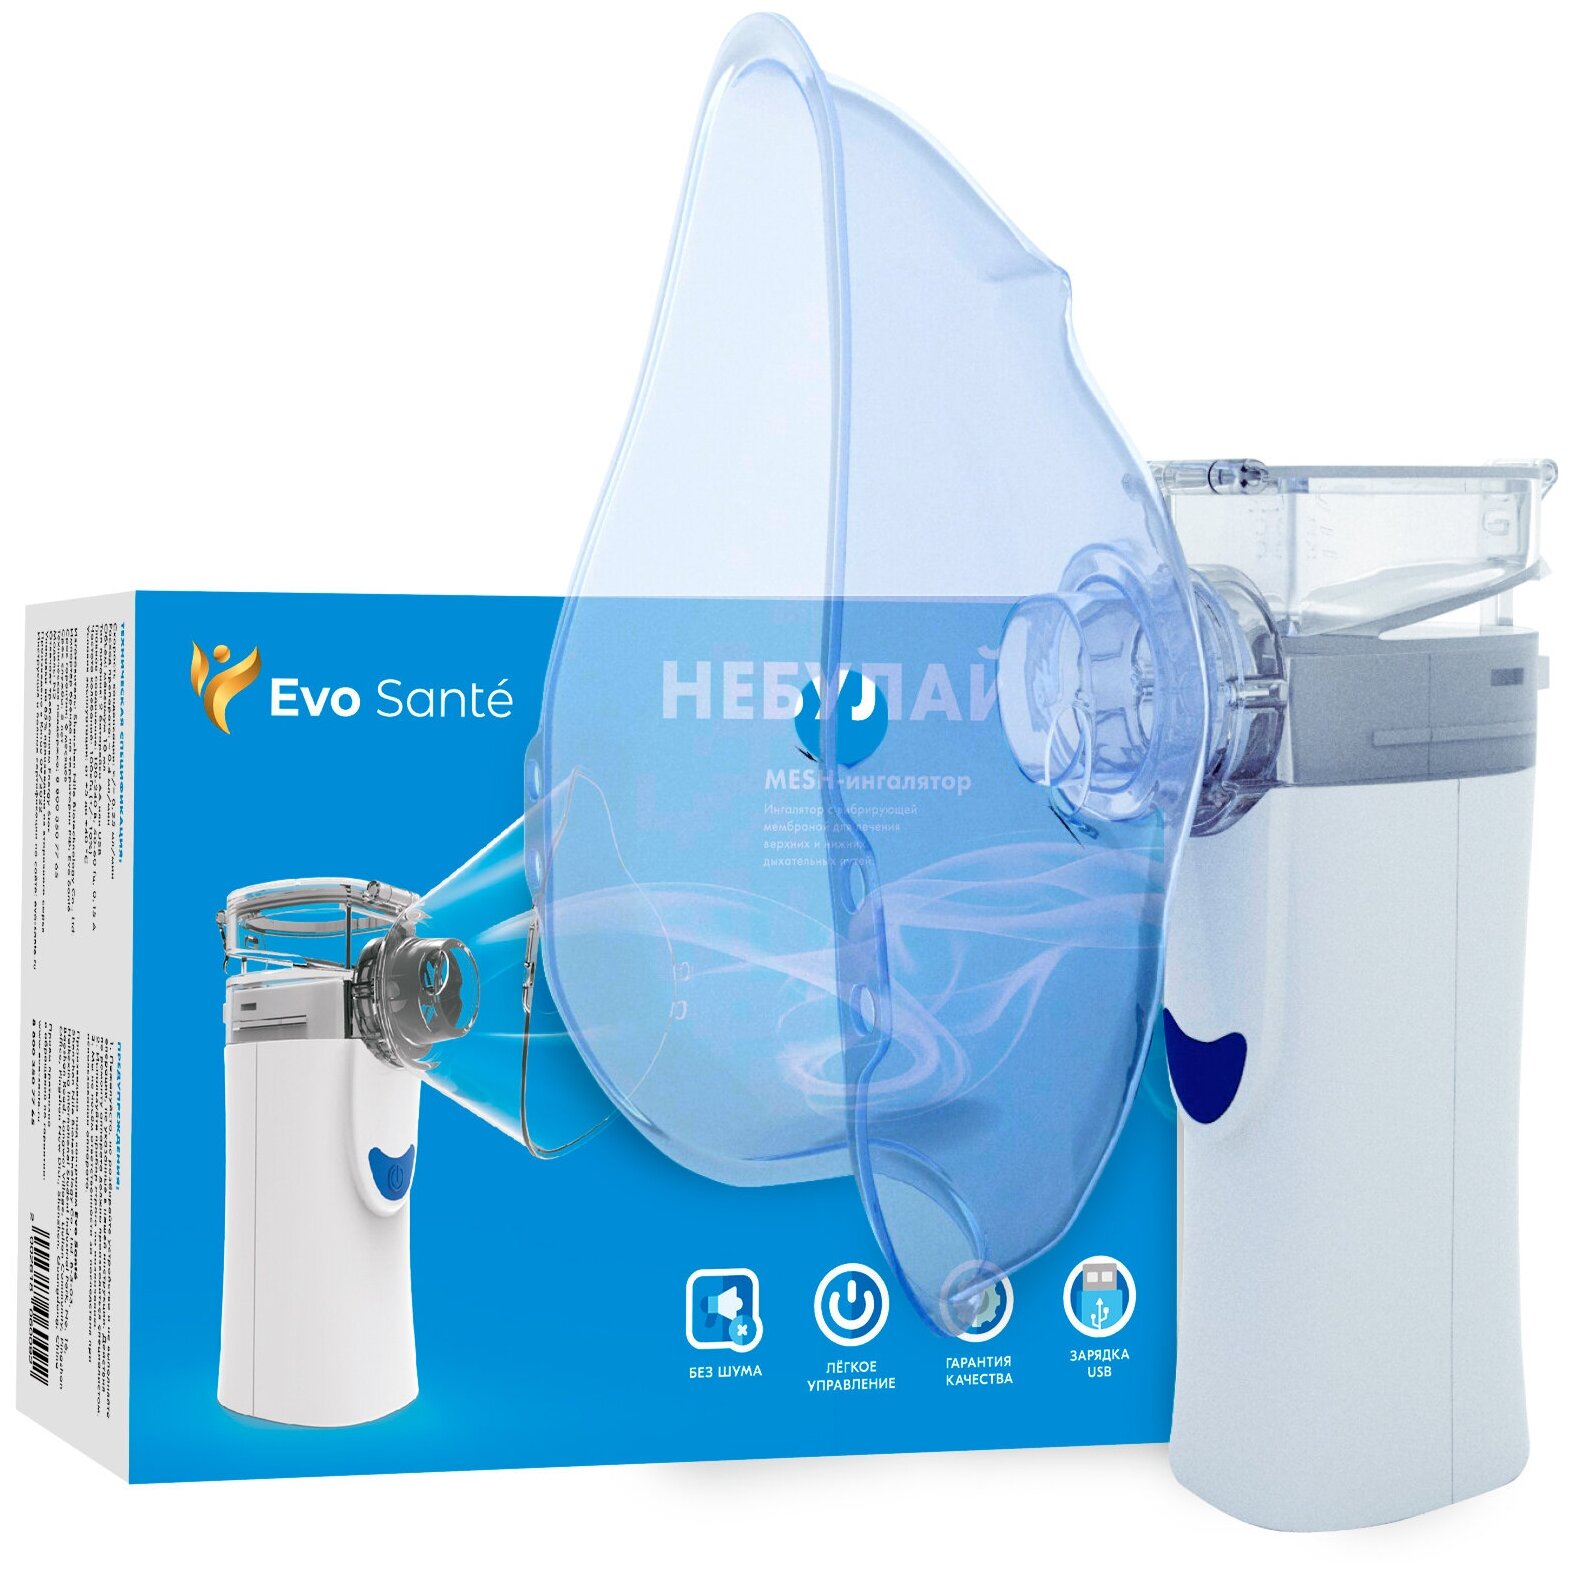 Меш-ингалятор Evo sante небулайзер 2 способа распыления 2 насадки для детей и взрослых